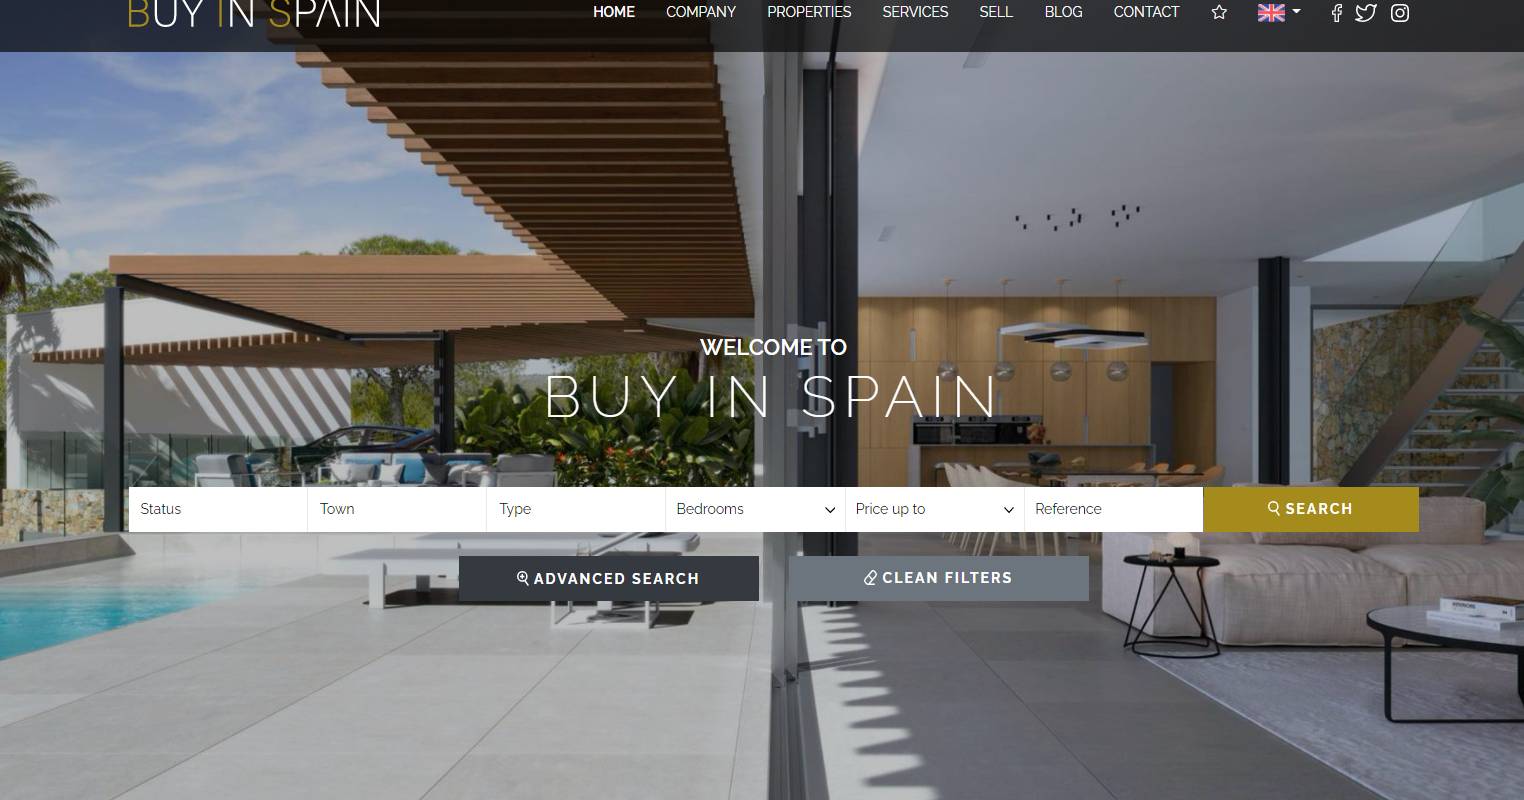 Cómo digitalizar una inmobiliaria en pandemia: lee la historia de Buy in Spain y SíSpain